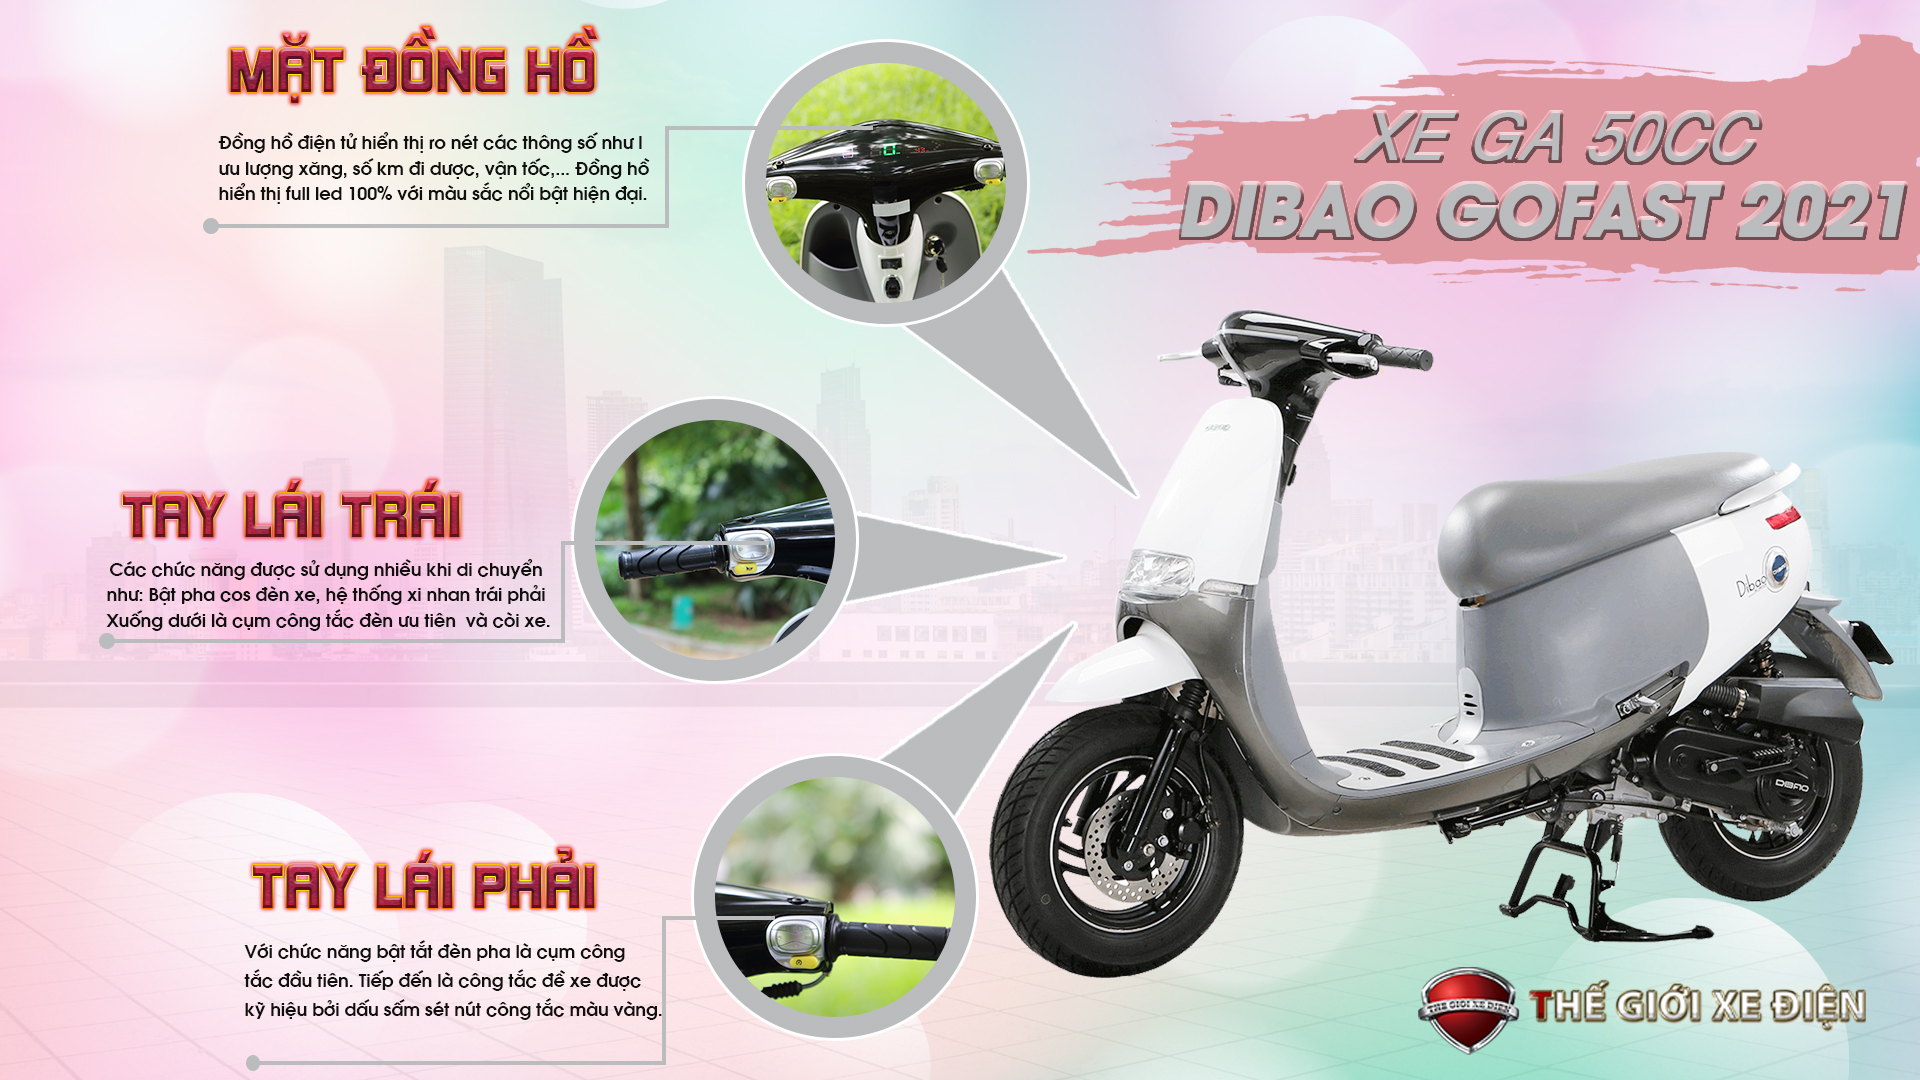 Xe Ga 50cc Dibao Gofast 2021: Siêu phẩm tích hợp những tính năng hữu ích